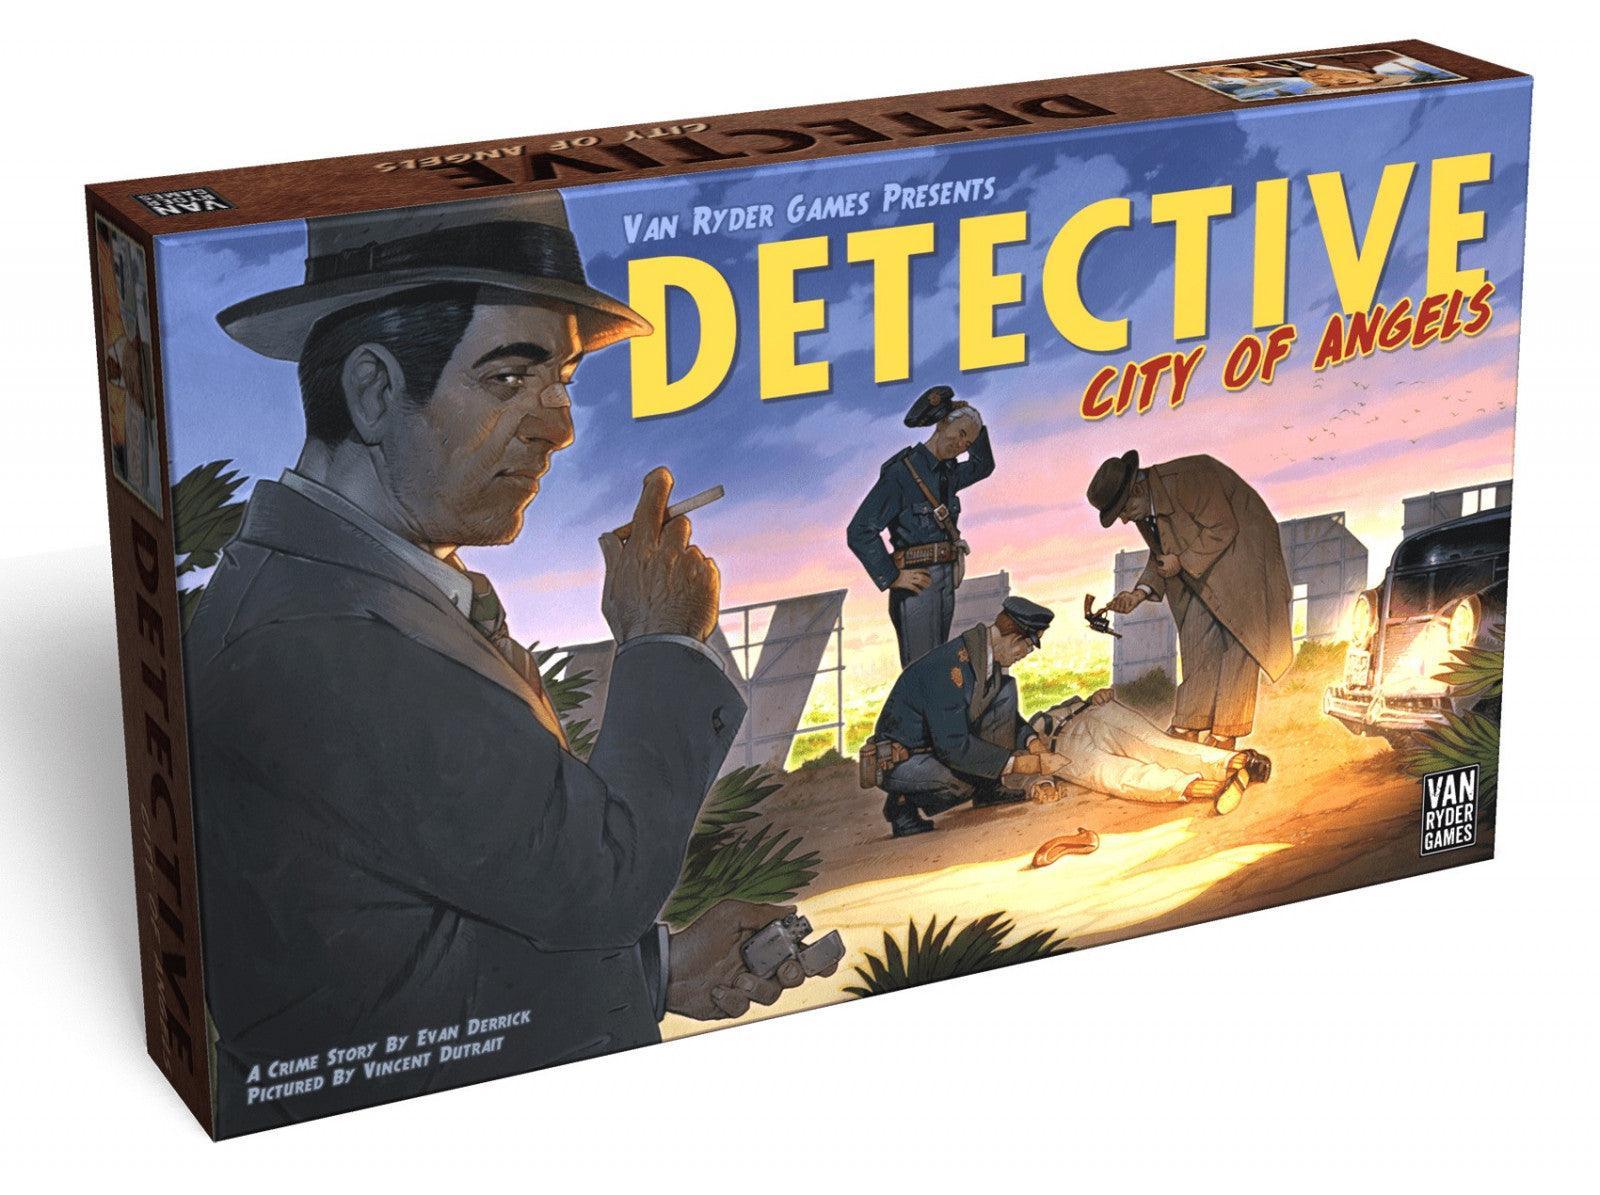 VR-100129 Detective City of Angels - Van Ryder Games - Titan Pop Culture